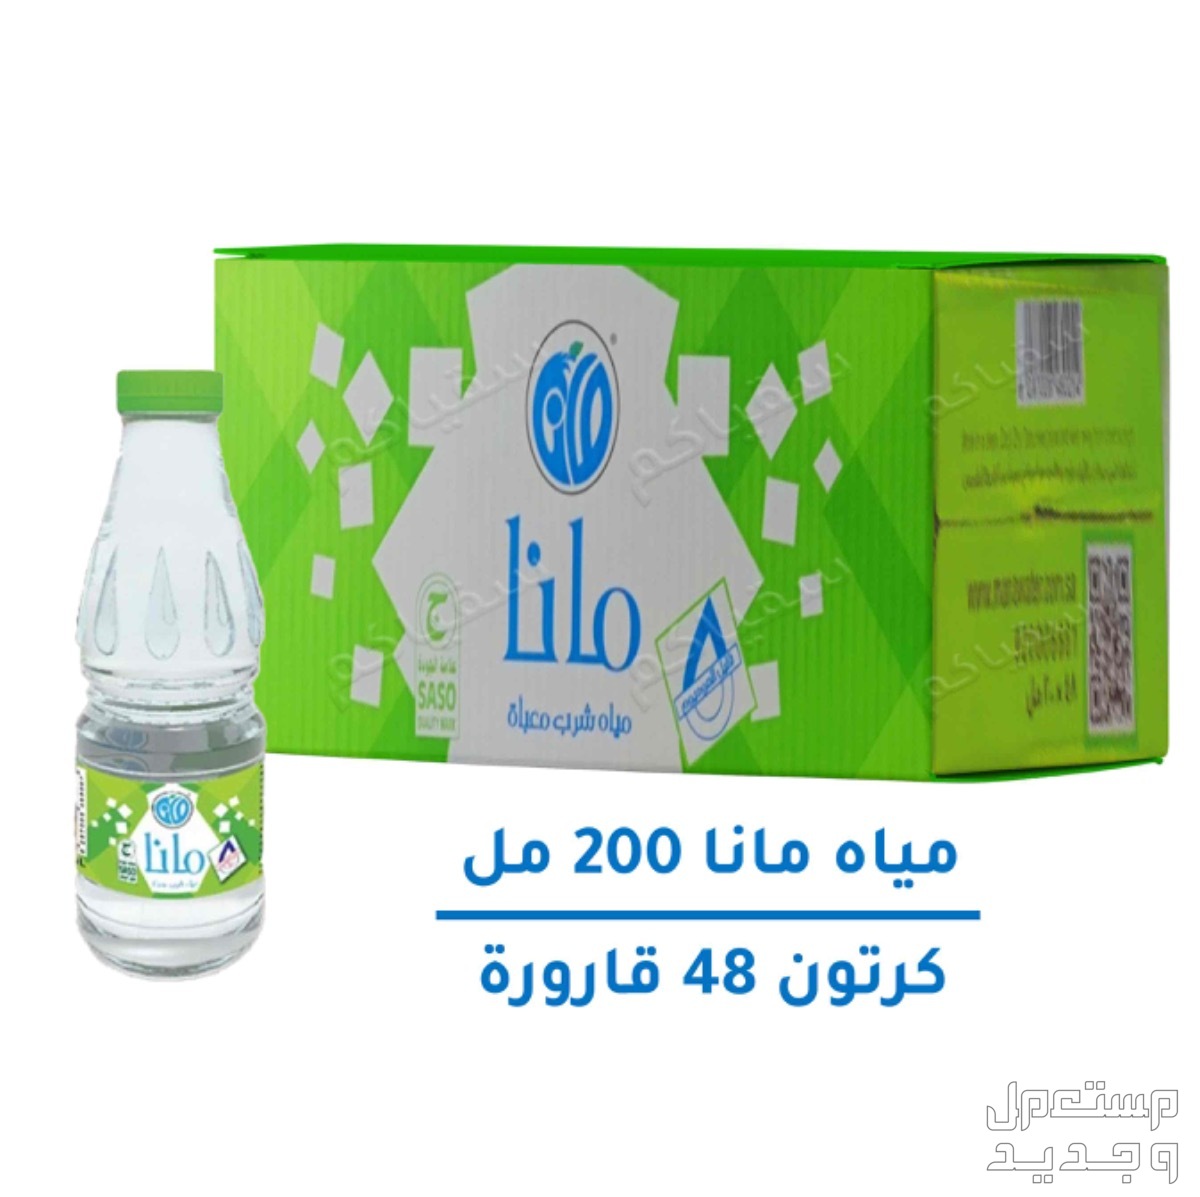 موزع كراتين مياه معتمد و توصيل مجاناً في جدة بسعر 0 ريال سعودي